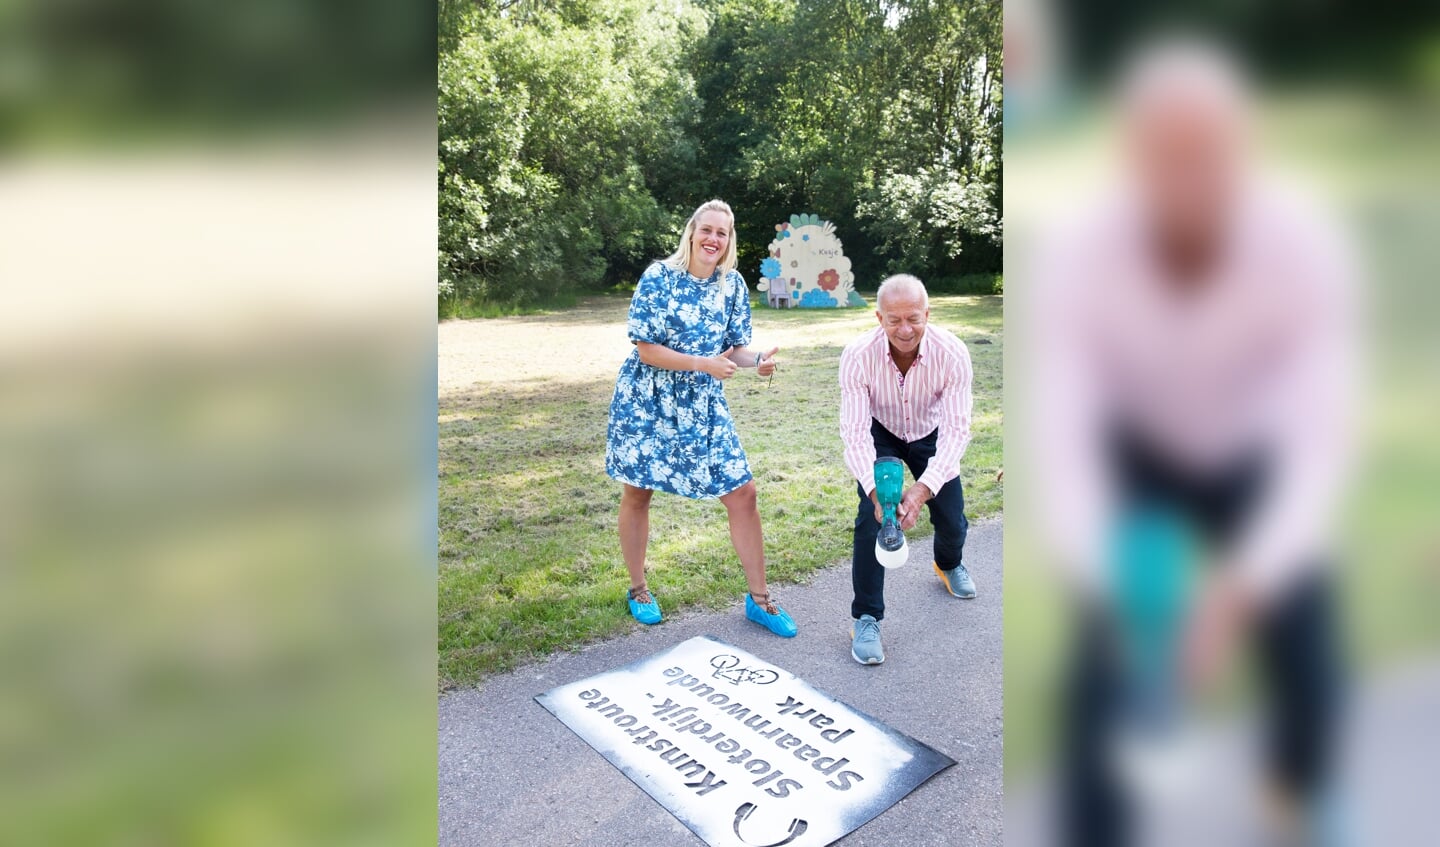 Ronald Mauer, voormalig stadsdeel bestuurder Amsterdam Nieuw West, en Elise Bos Eyssen programmamanager Spaarnwoude Park, mochten de eerste krijtuiting doen.